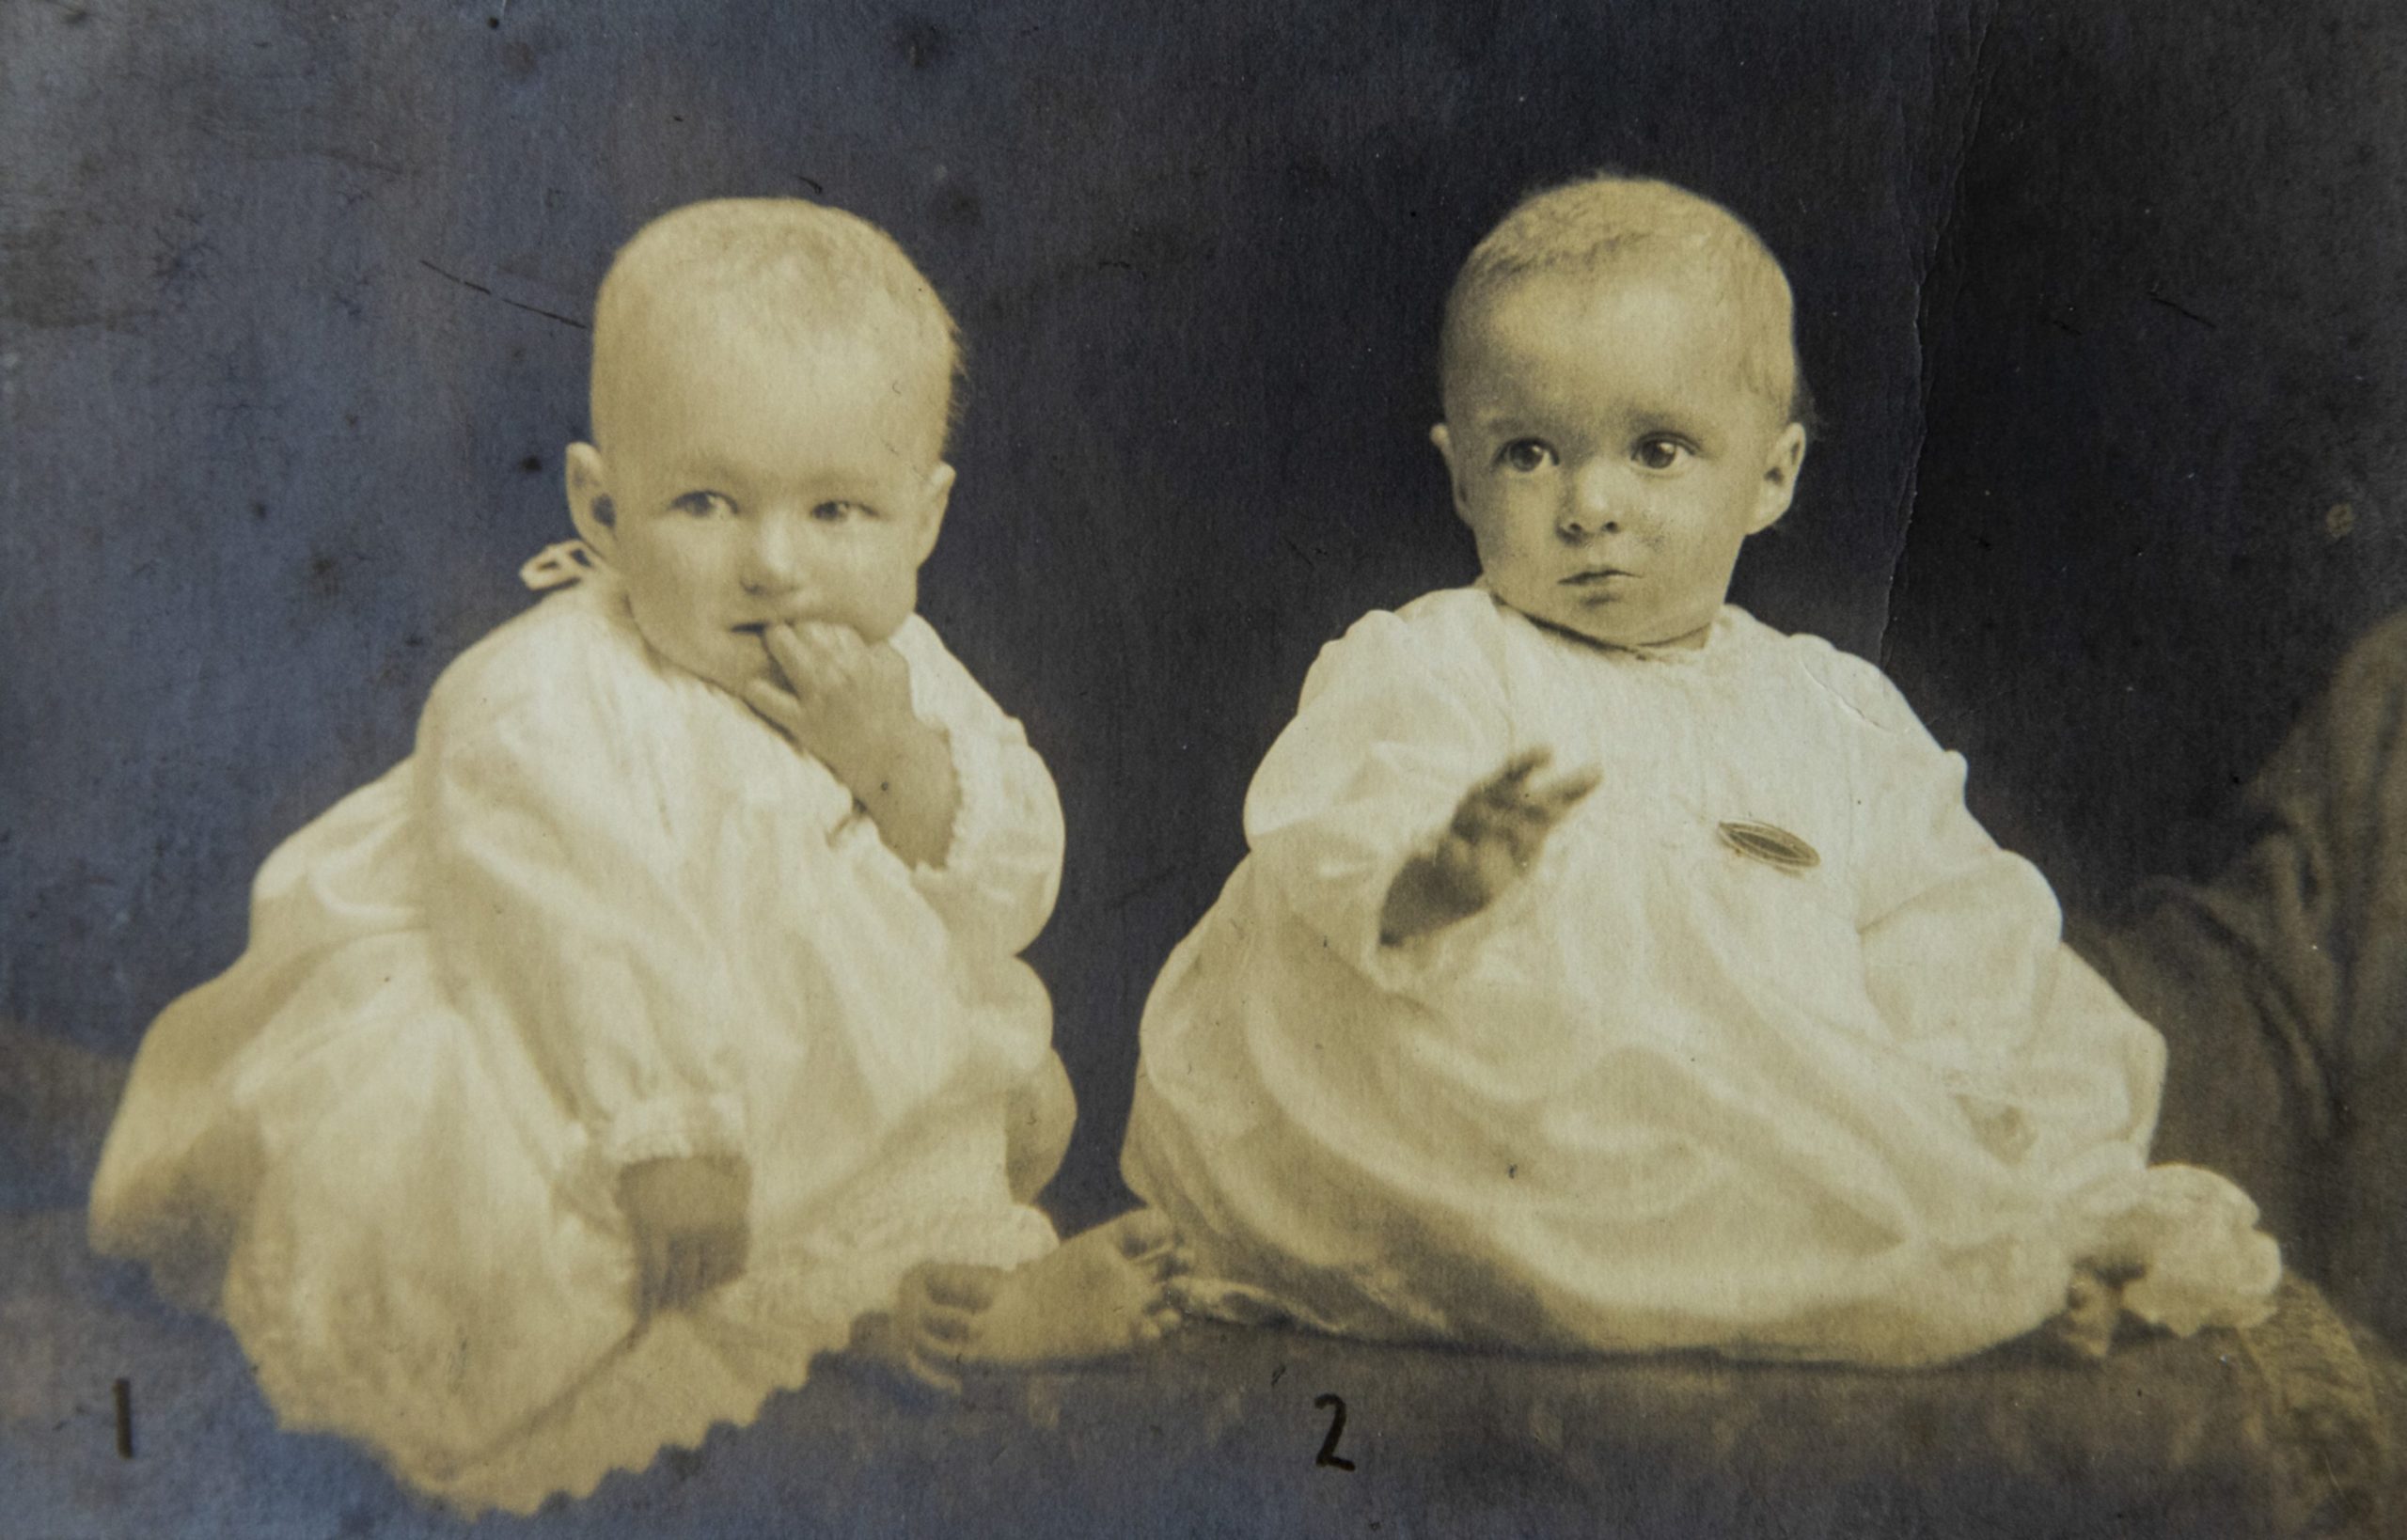 Twin babies Maureen, left, and Margaret in 1921